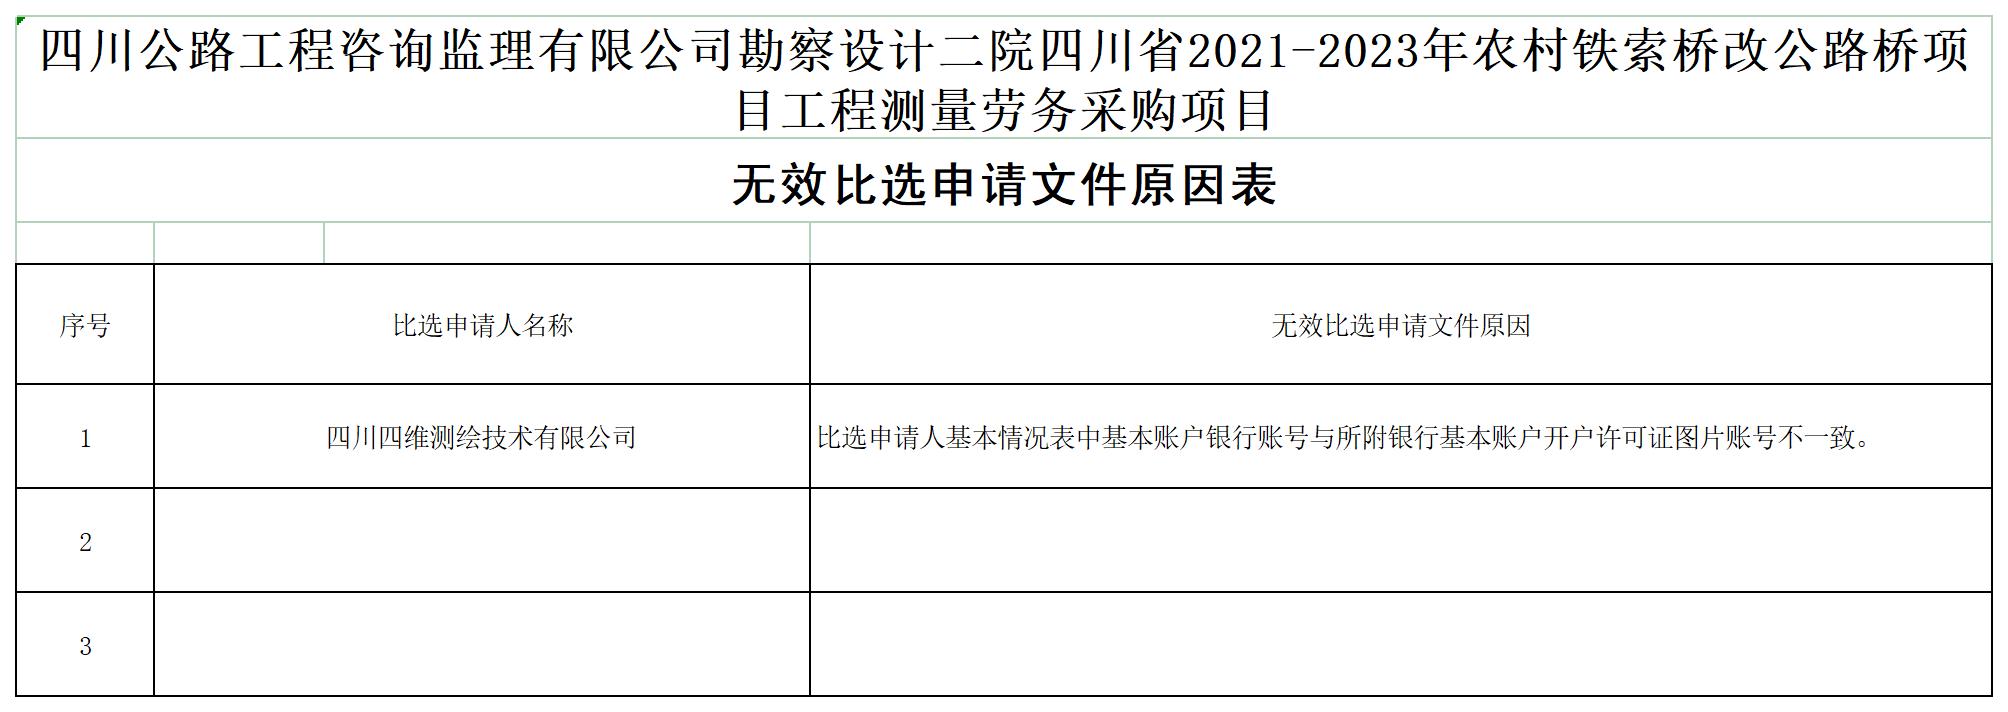 HTH华体会·(中国)官方网站勘察设计二院四川省2021-2023年农村铁索桥改公路桥项目工程测量劳务采购项目无效文件原因表_A1D7.jpg